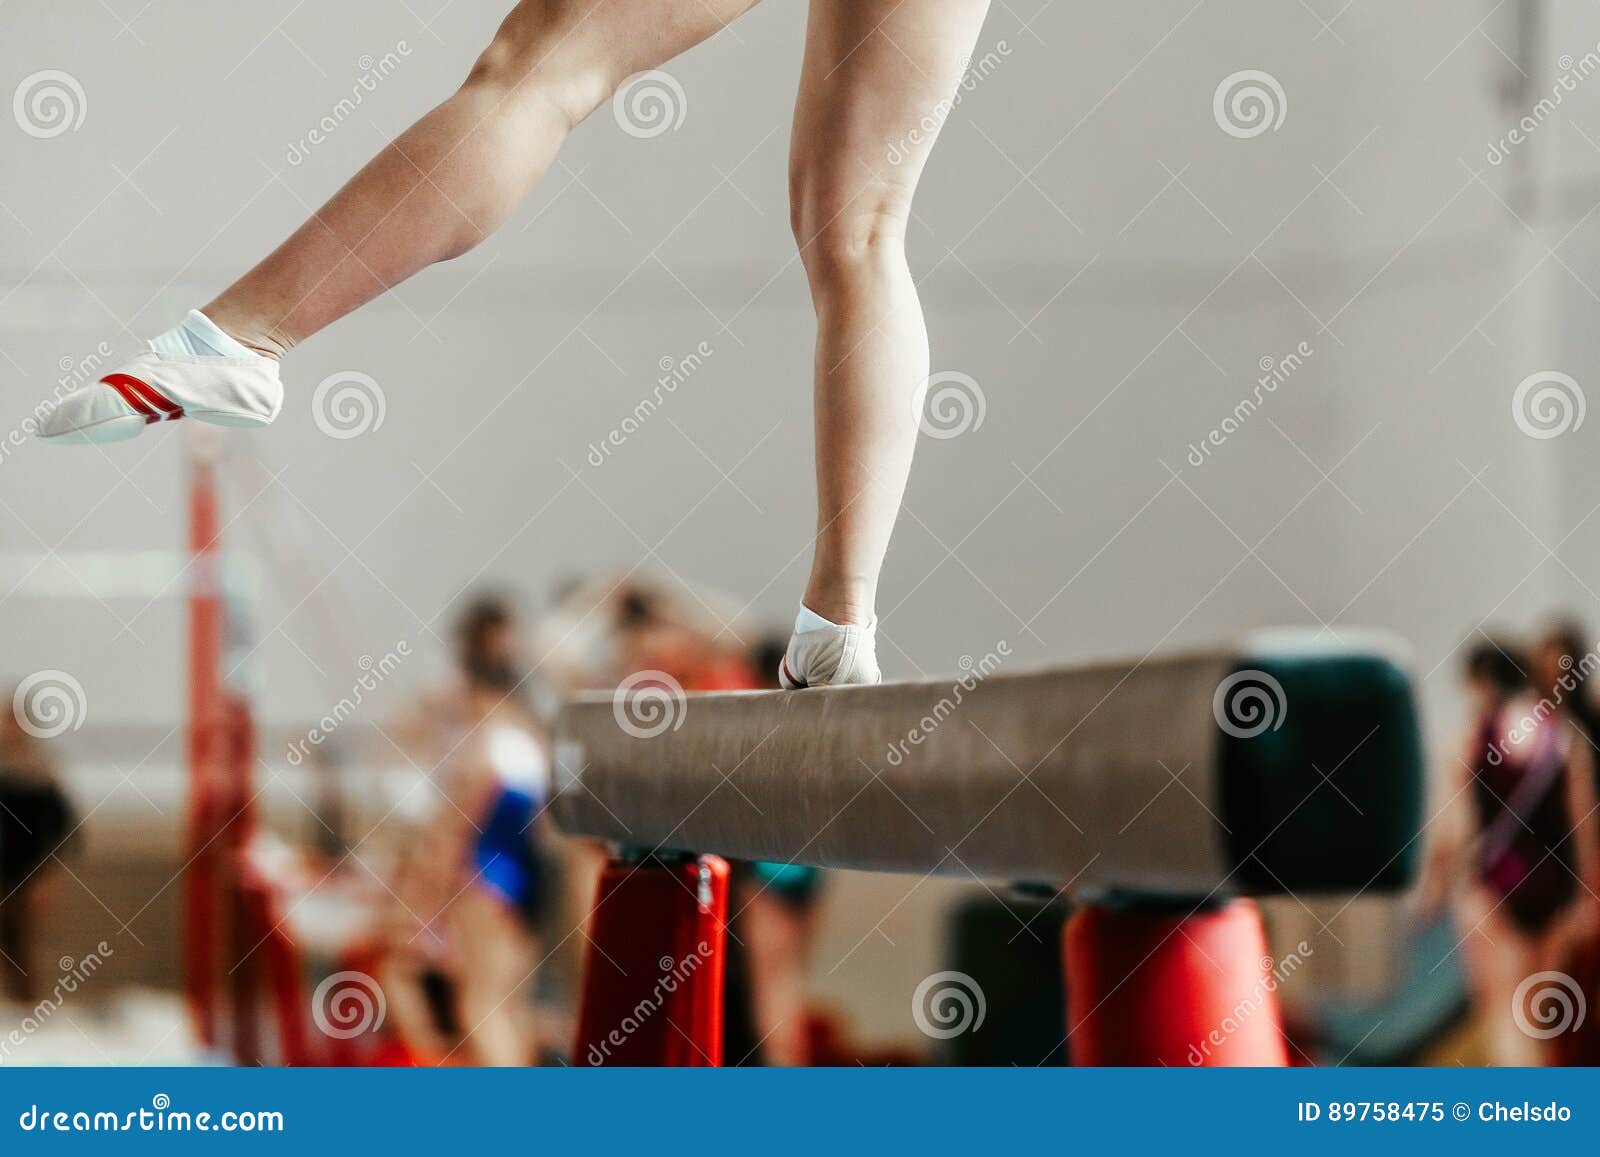 Feet sexy gymnast 41 Hottest